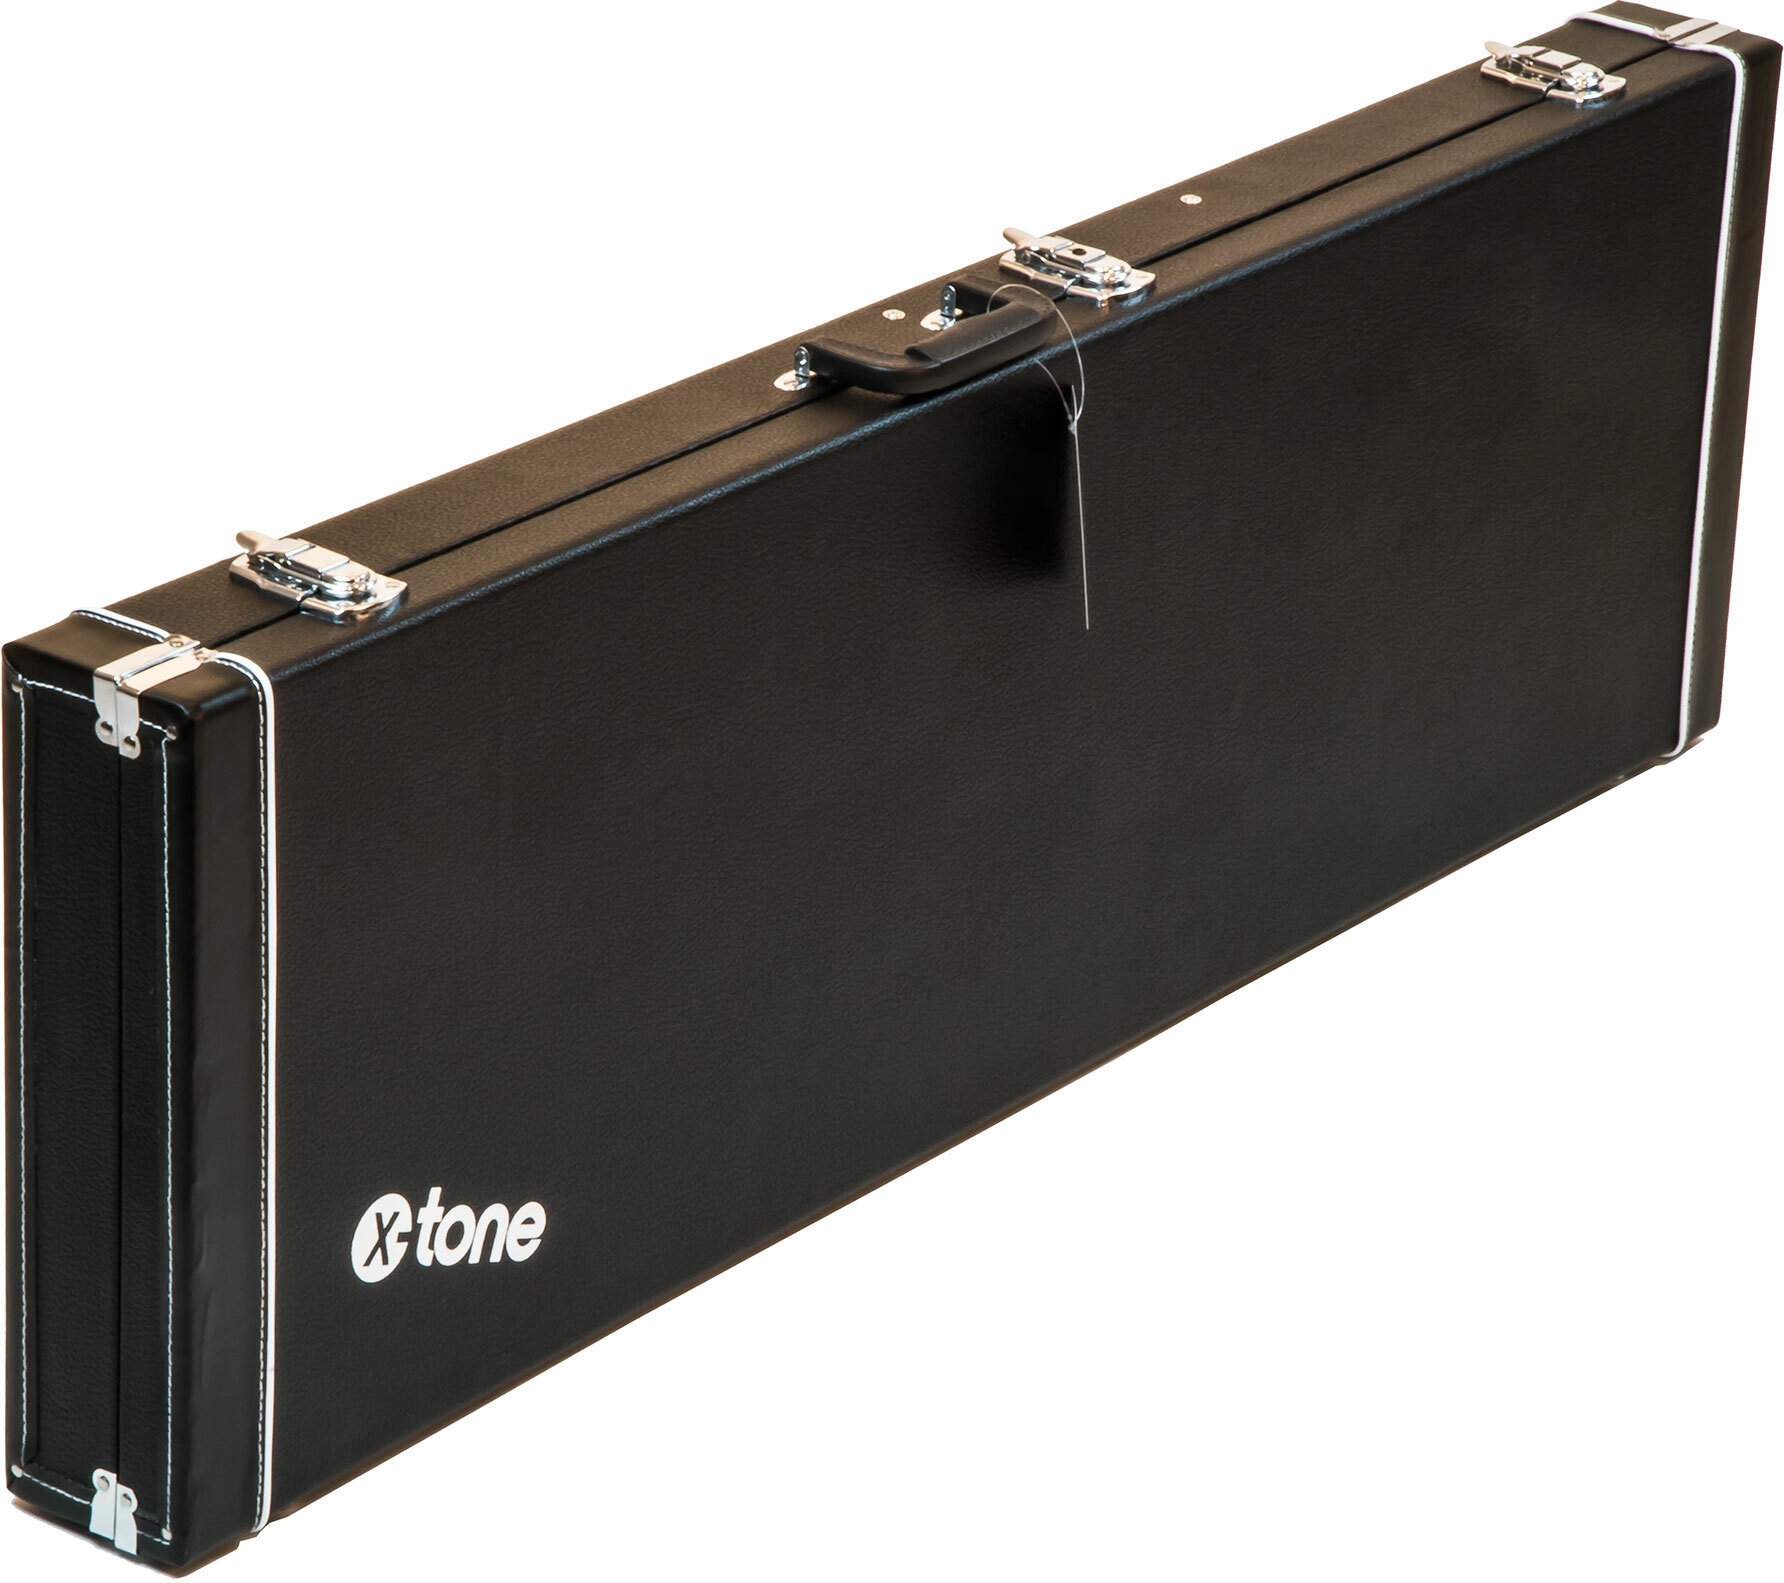 X-tone 1504 Standard Electrique Jazz/precision Bass Rectangulaire Black - Electric bass case - Main picture